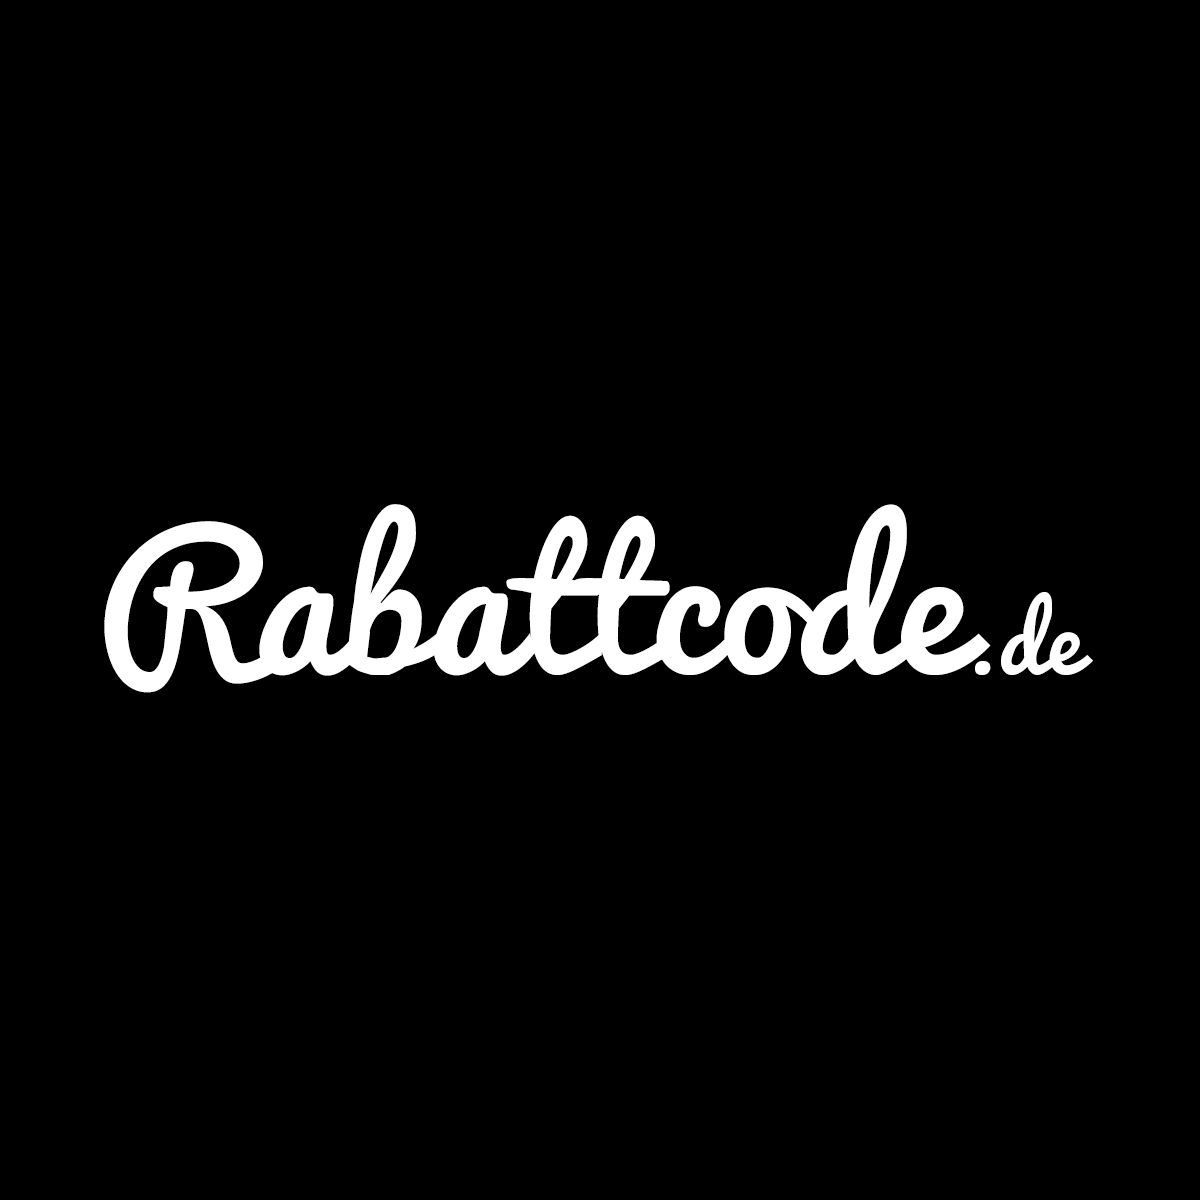 (c) Rabattcode.de